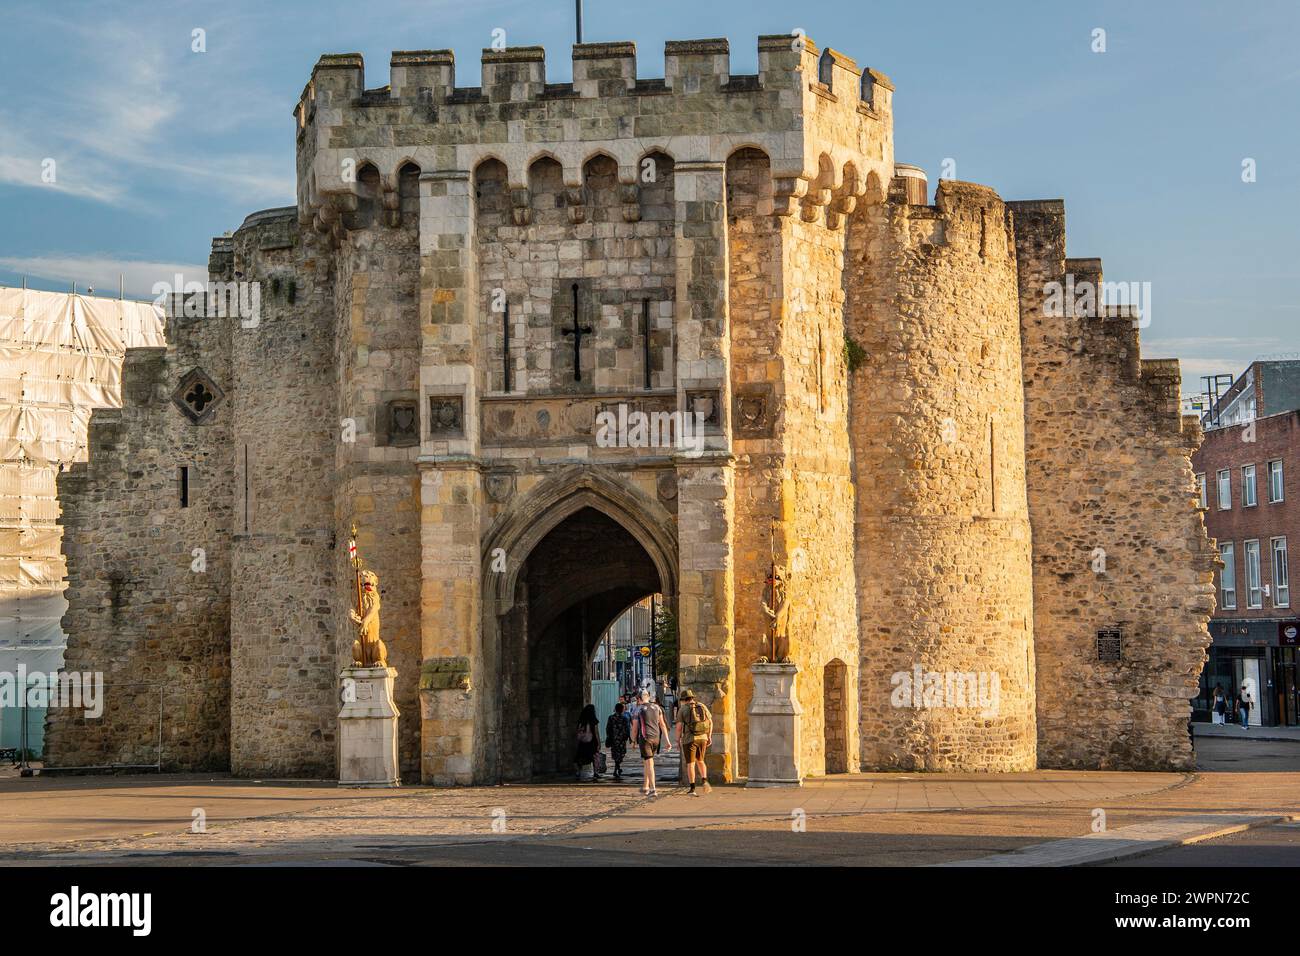 Porte de ville médiévale de Bargate dans le centre, Southampton, Hampshire, Grande-Bretagne, Angleterre Banque D'Images